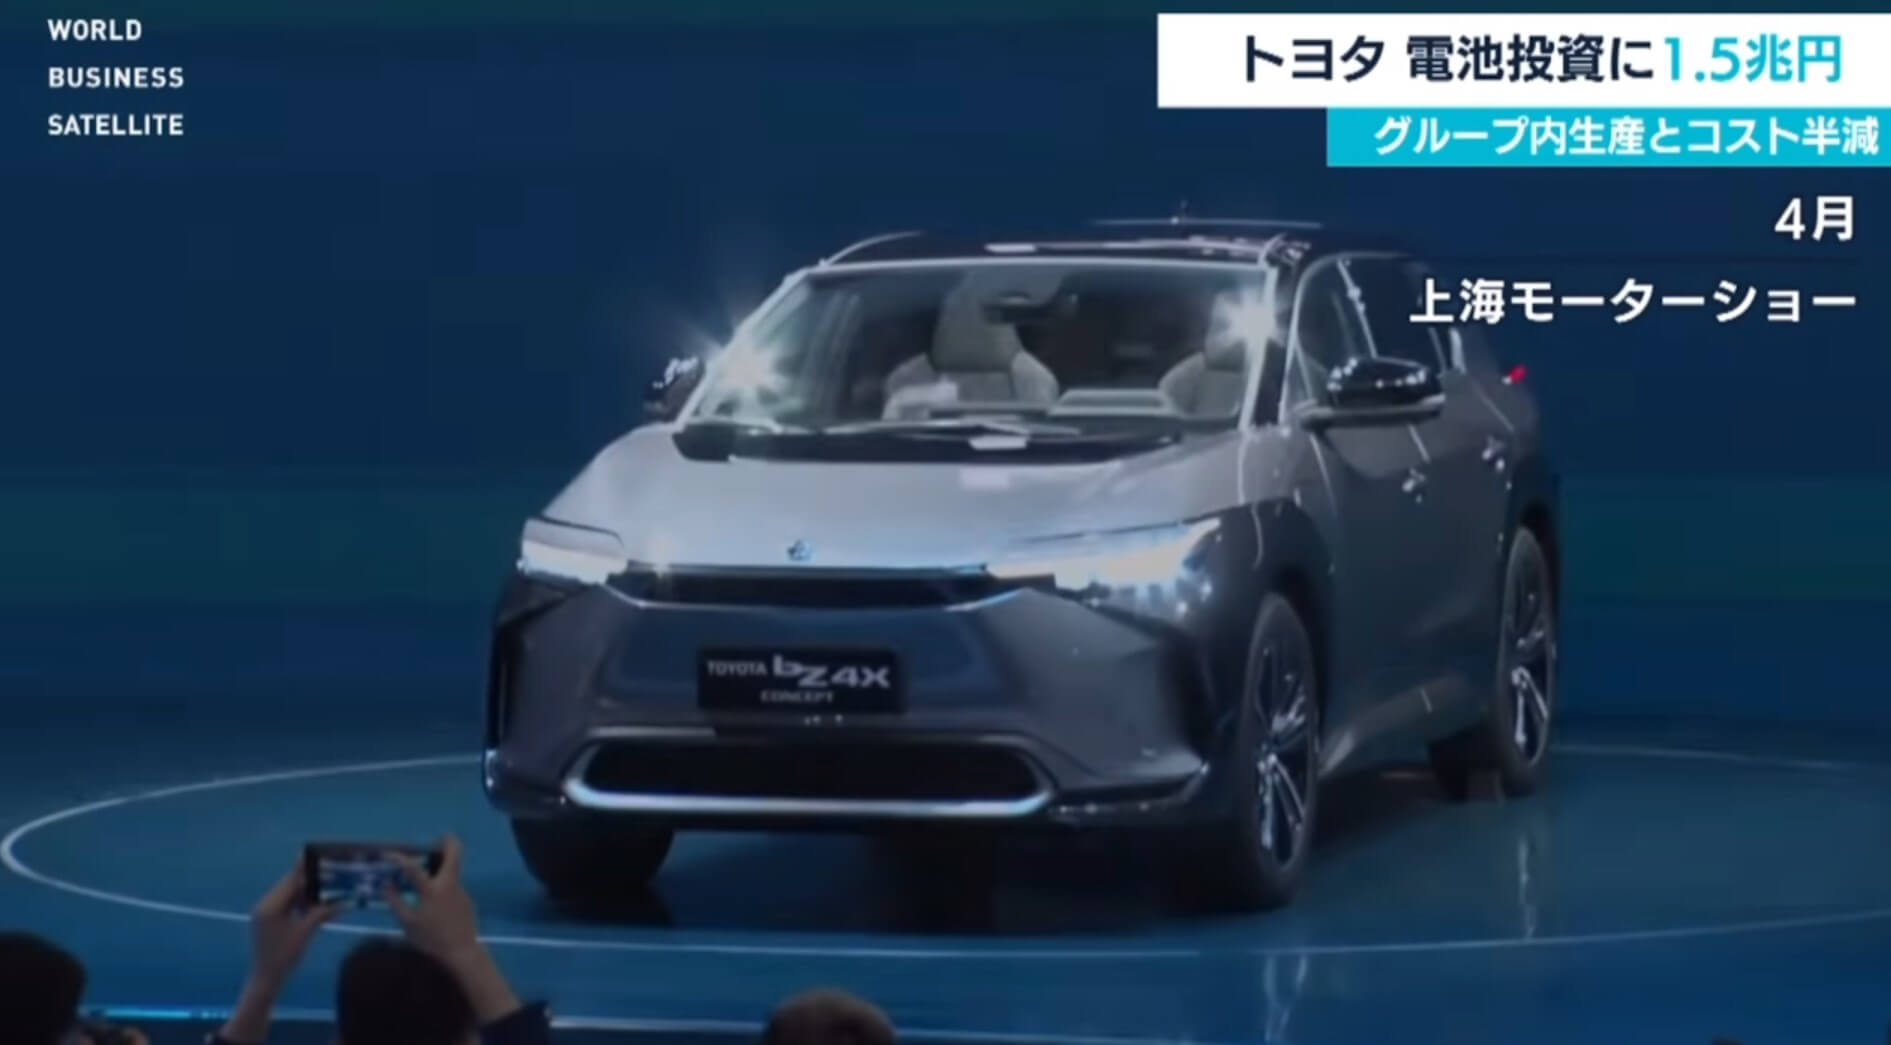 Toyota vai investir 1,5 trilhão de ienes no desenvolvimento de baterias